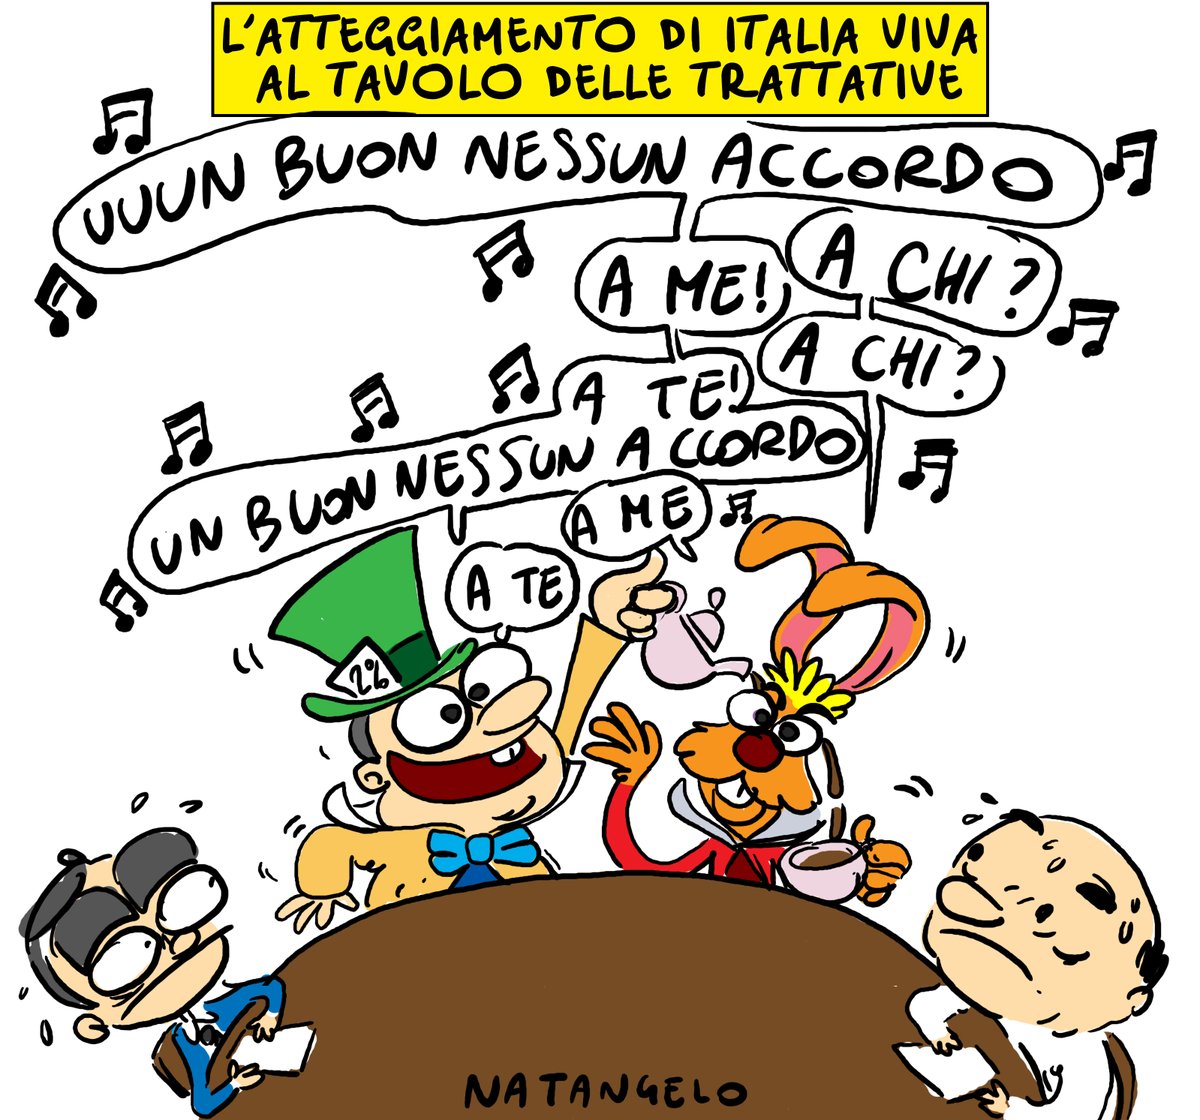 ♫♫ Un buon nessun accordo ♫♫

#consultazioni #renzi #italiaviva #m5s #pd #alicenelpaesedellemeraviglie #cappellaiomatto #nessunaccordo #fumettiitaliani #vignetta #fumetto #umorismo #satira #humor #natangelo